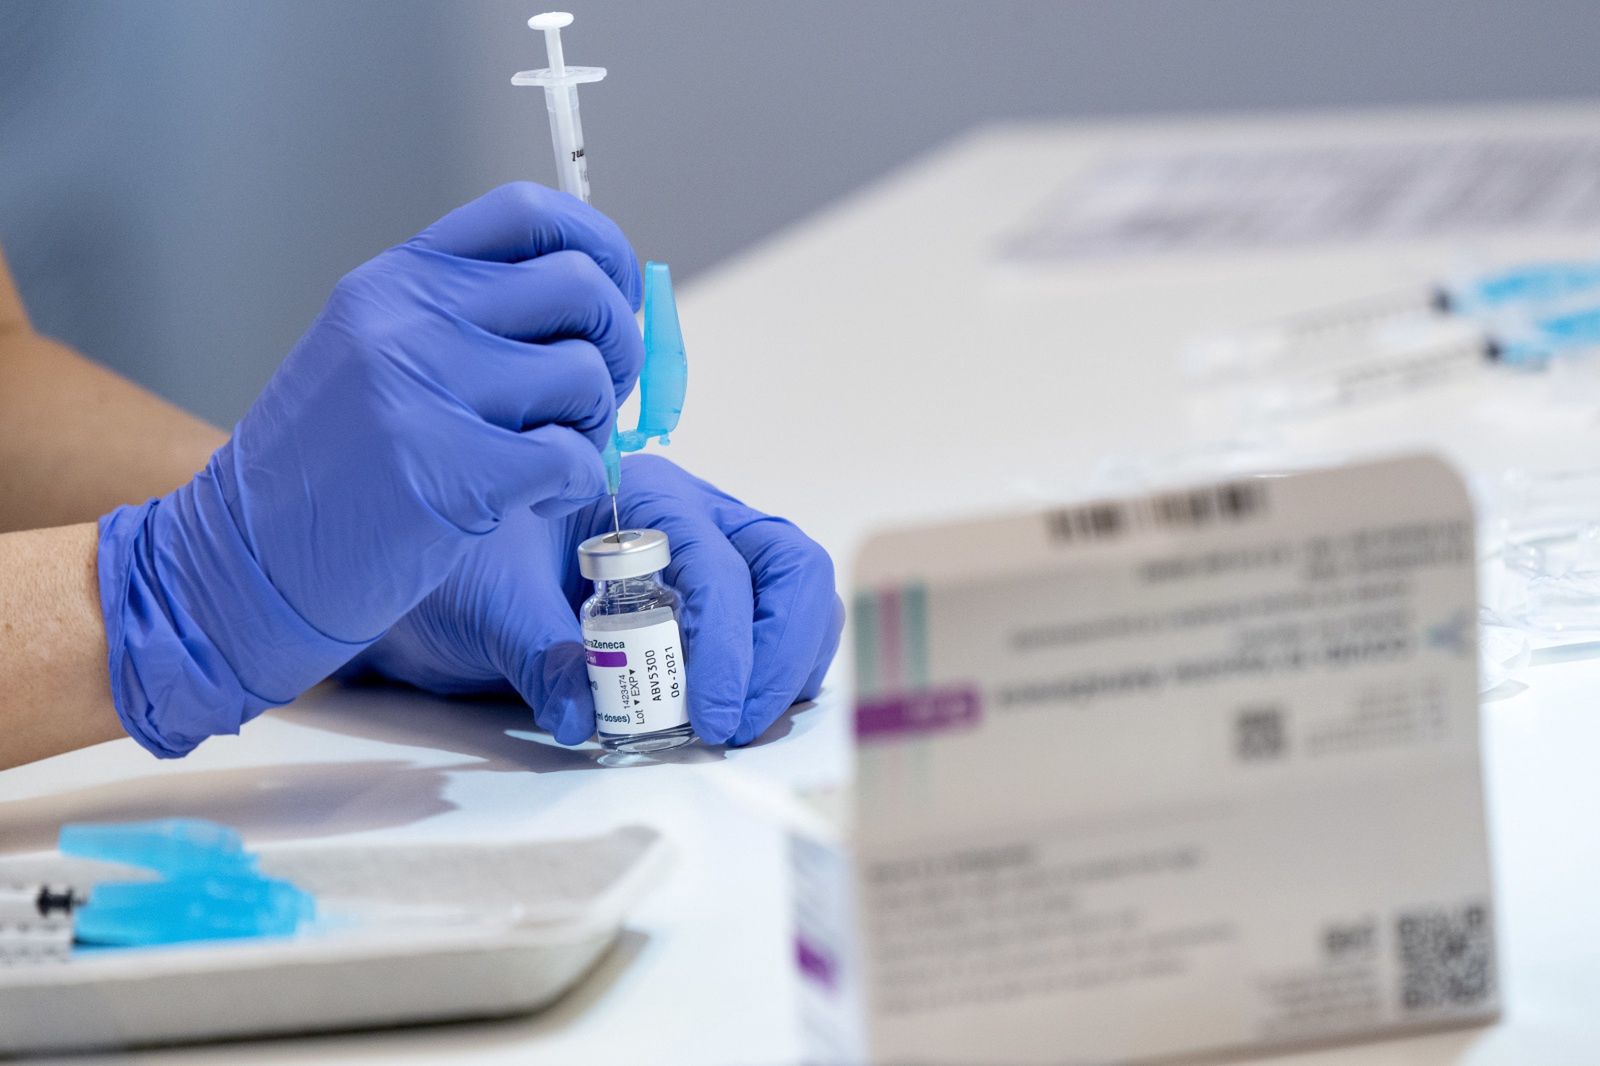 Skutki uboczne po szczepieniu? Niemcy tracą zaufanie do szczepionki